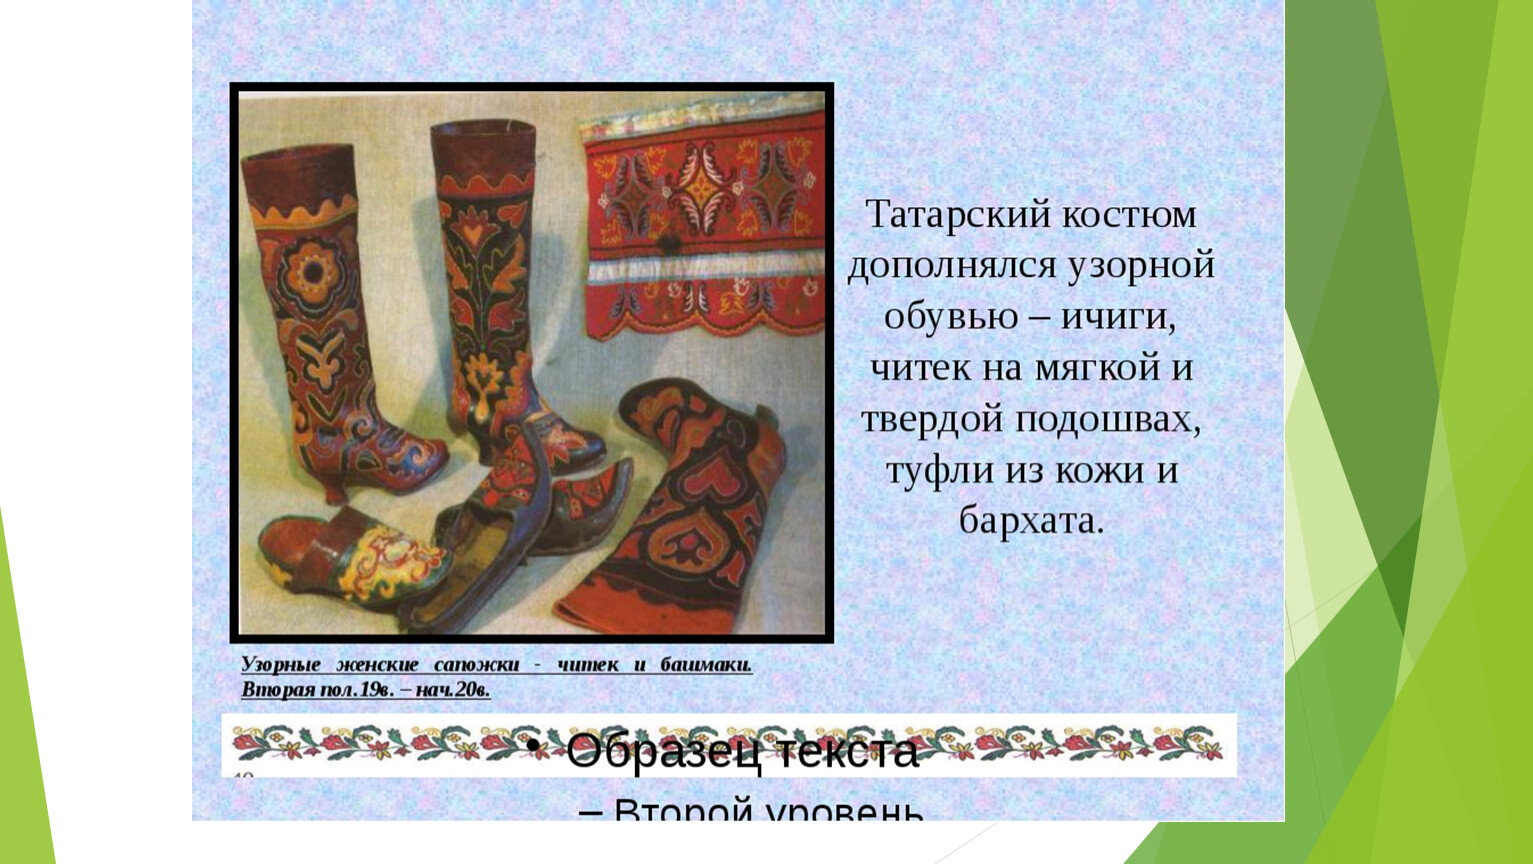 Татарская Национальная одежда ичиги